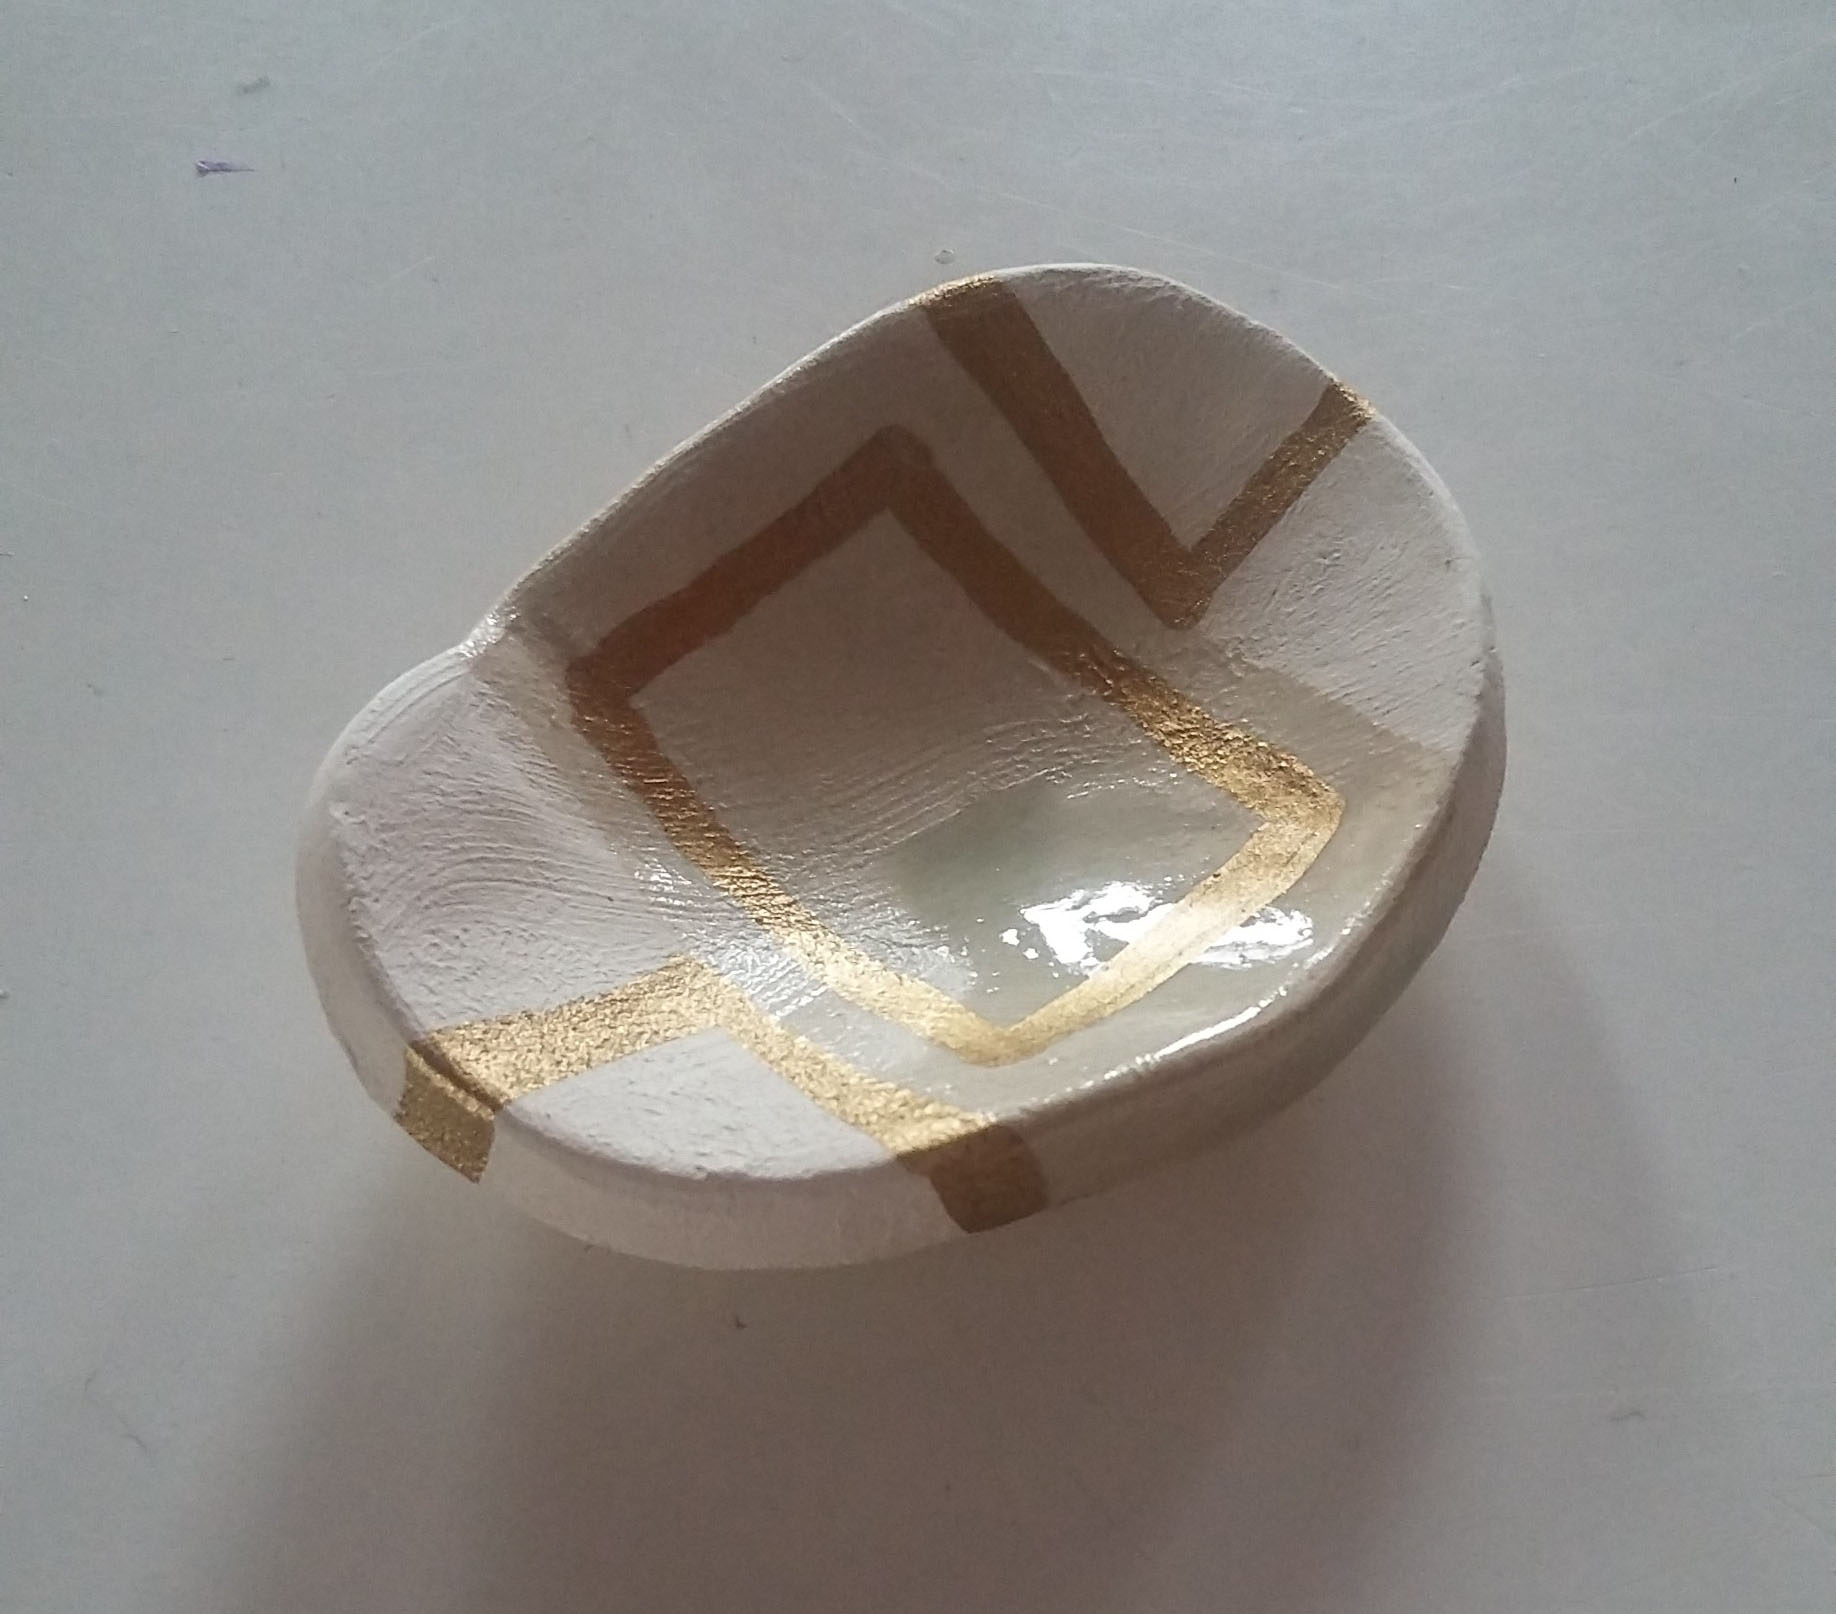 Miniature ceramic pot.